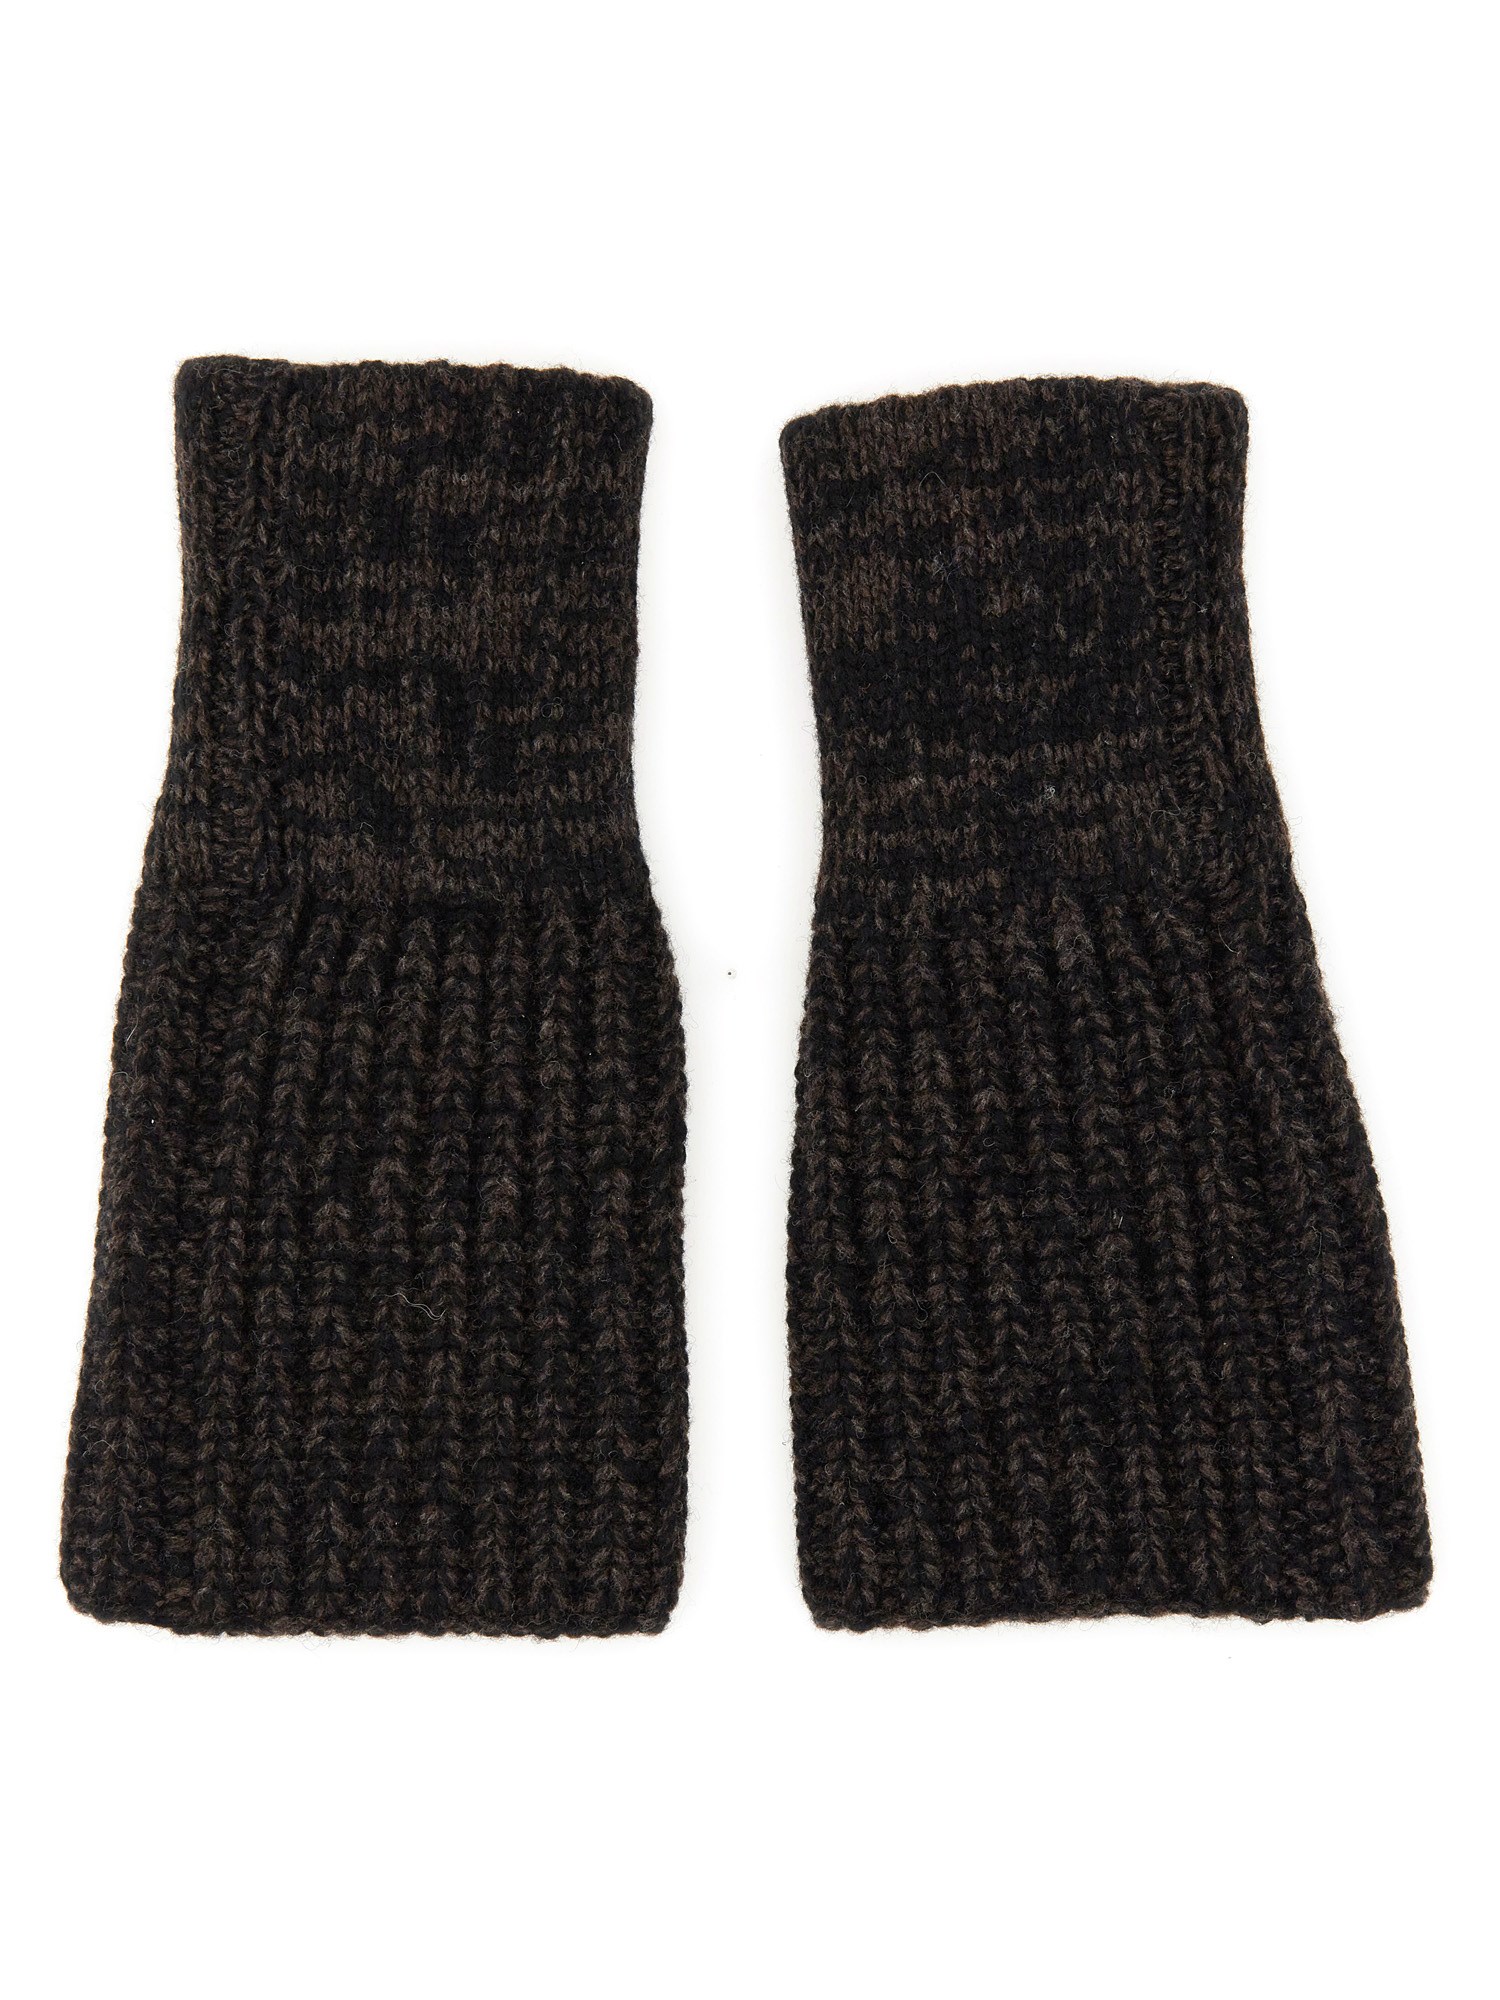 Études études merino wool gloves